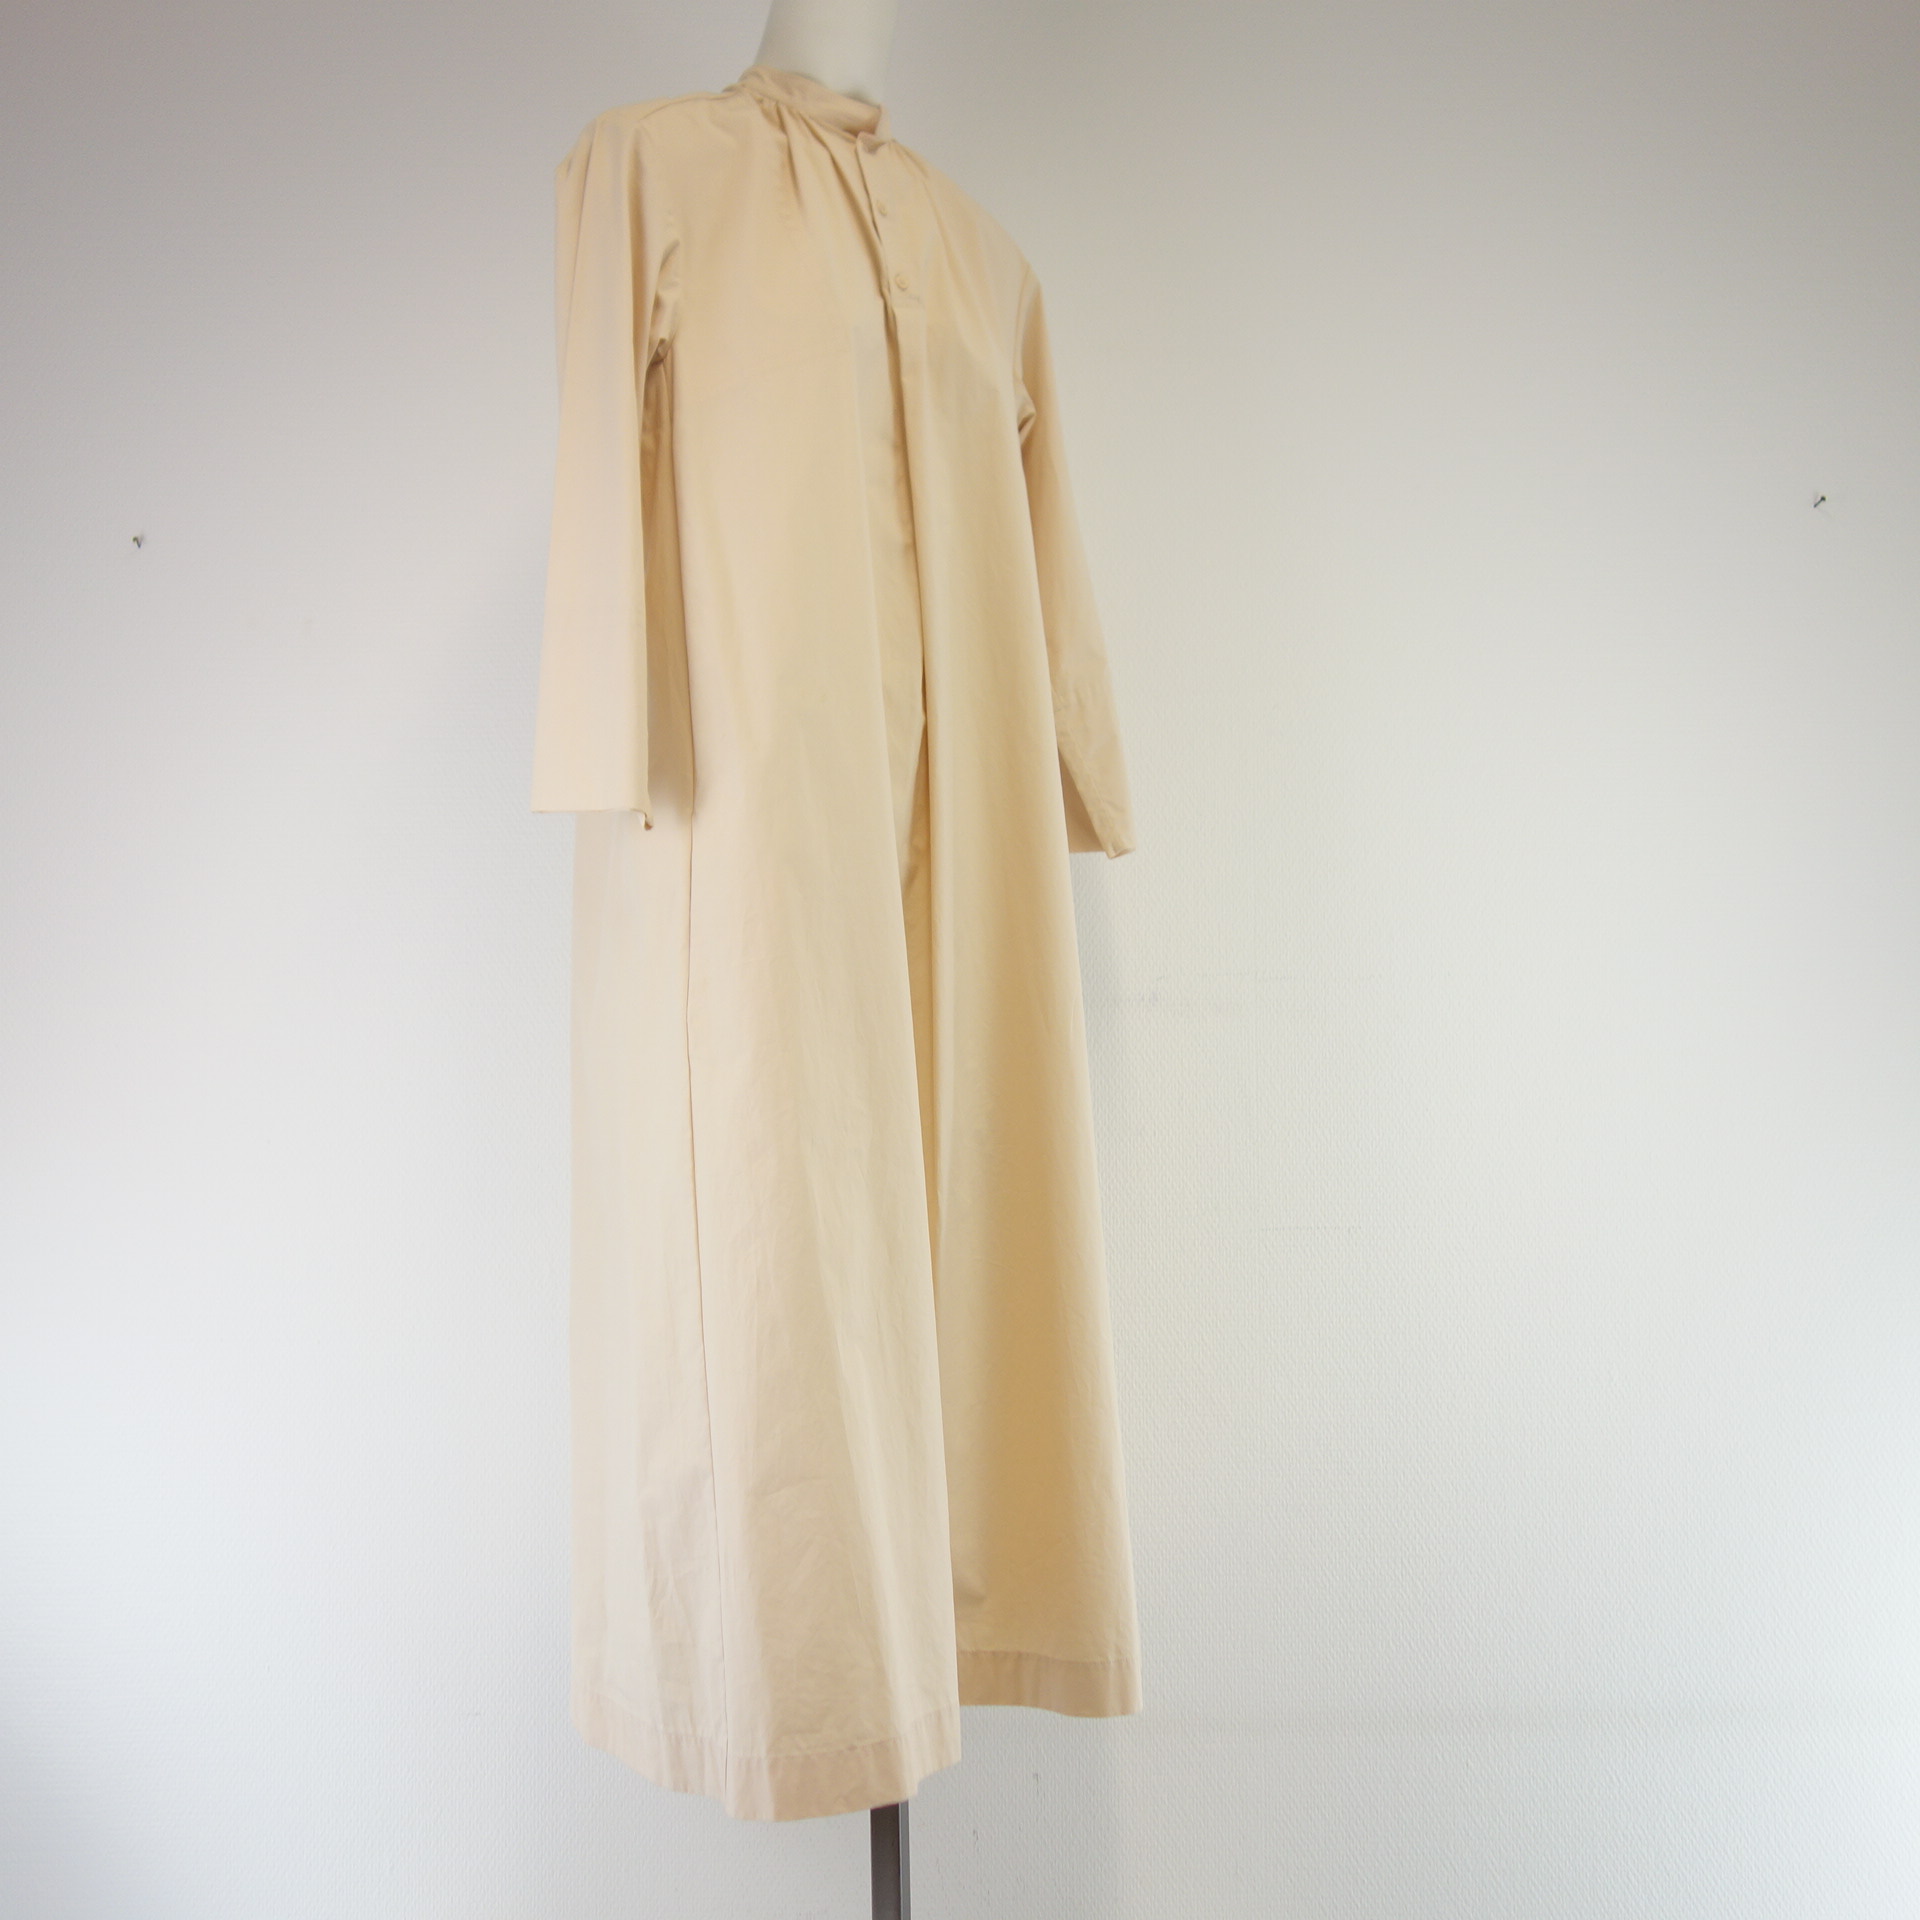 JOSEPH Damen Midi Kleid Hemdkleid Blusenkleid Tunika Nude Gr 36 Oversize Baumwolle